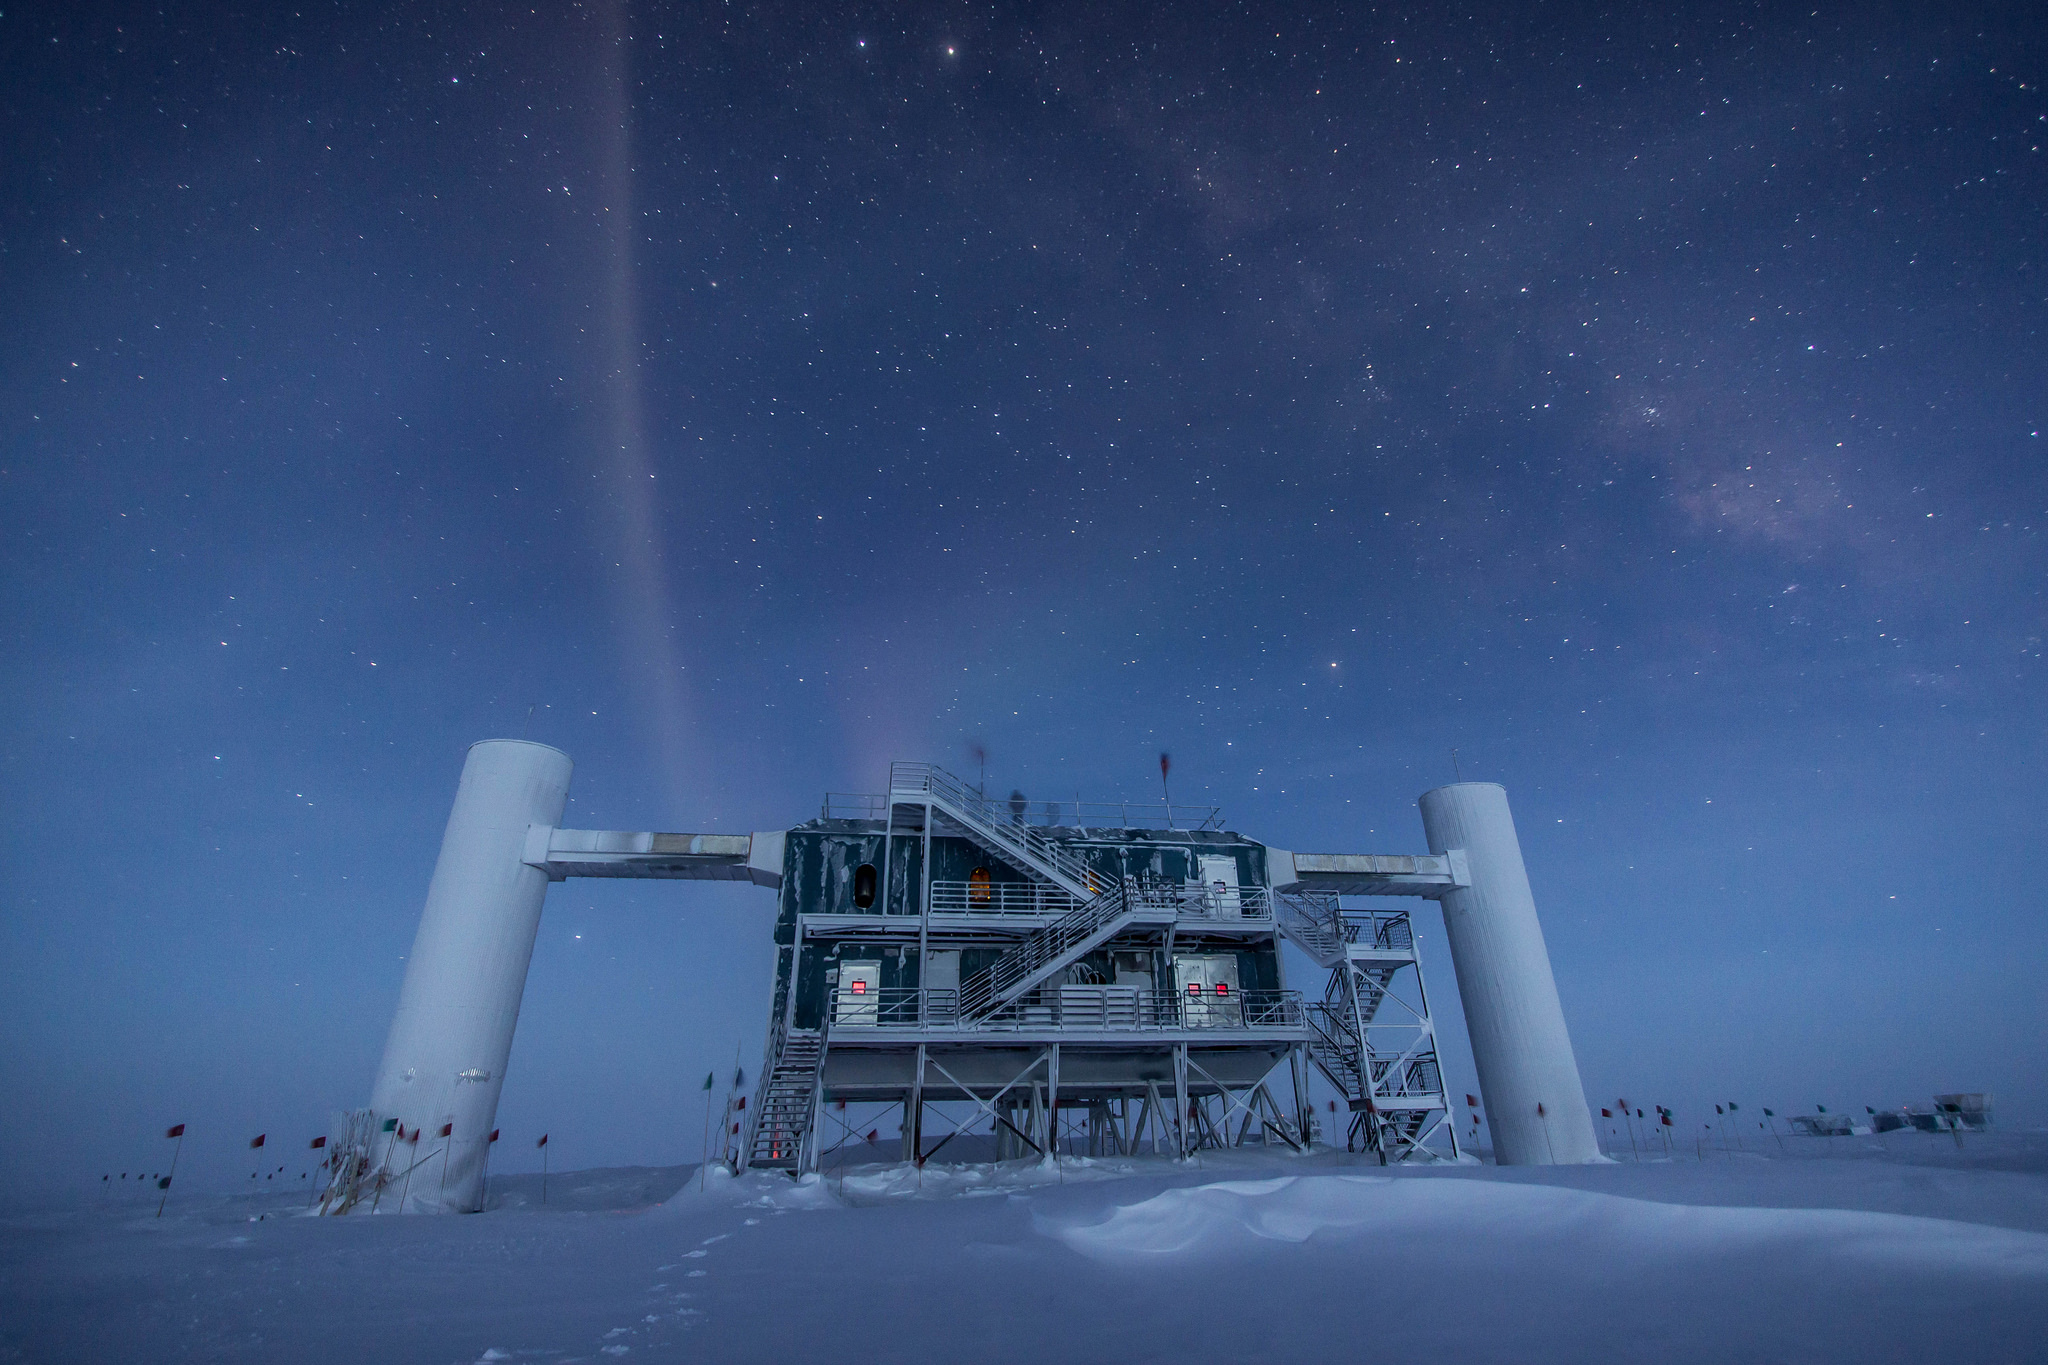 Les bâtiments de surface surplombant le détecteur géant de neutrinos IceCube, en Antarctique. La pureté de la glace à plus d’un kilomètre de profondeur permet à plus de 5.000 photomultiplicateurs d'enregistrer avec précision les flashs bleutés très ténus générés par les muons issus de la collision des neutrinos avec les noyaux atomiques de la glace. La construction d'IceCube a commencé en 2005, mais le détecteur est une version plus grande d'Amanda, qui date du début des années 1990. © Felipe Pedreros, IceCube, NSF